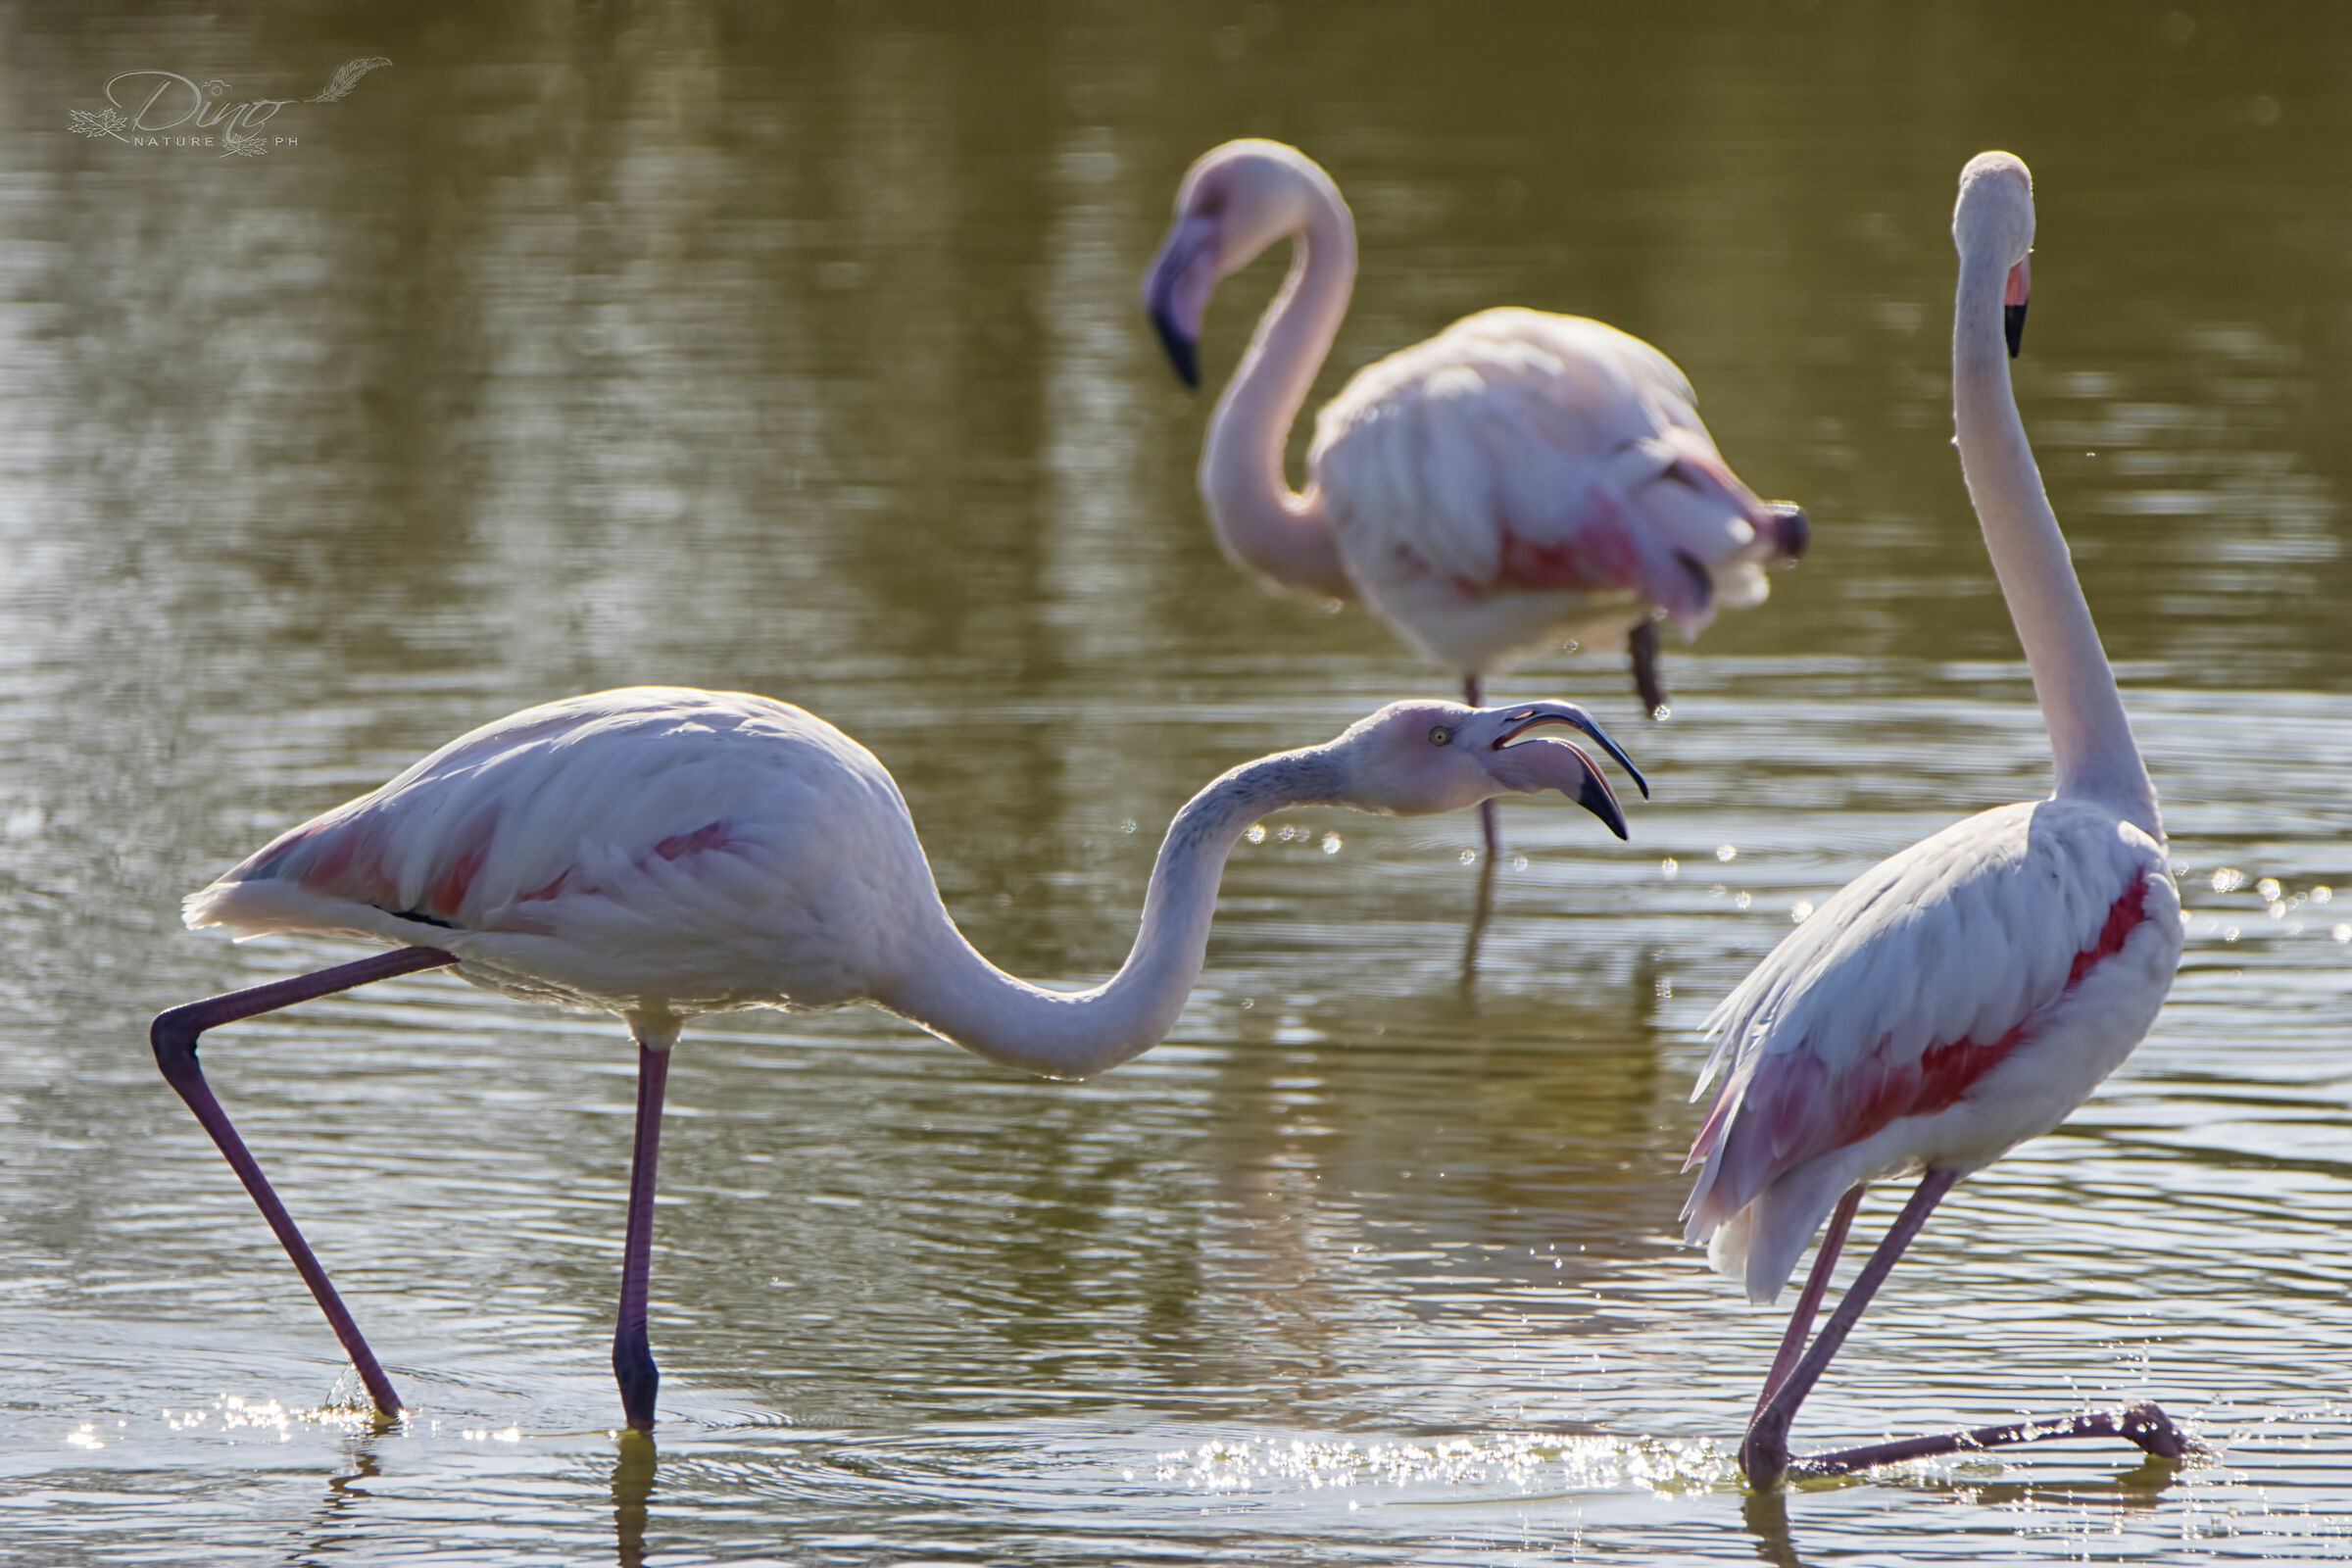 Flamingo skirmishes...